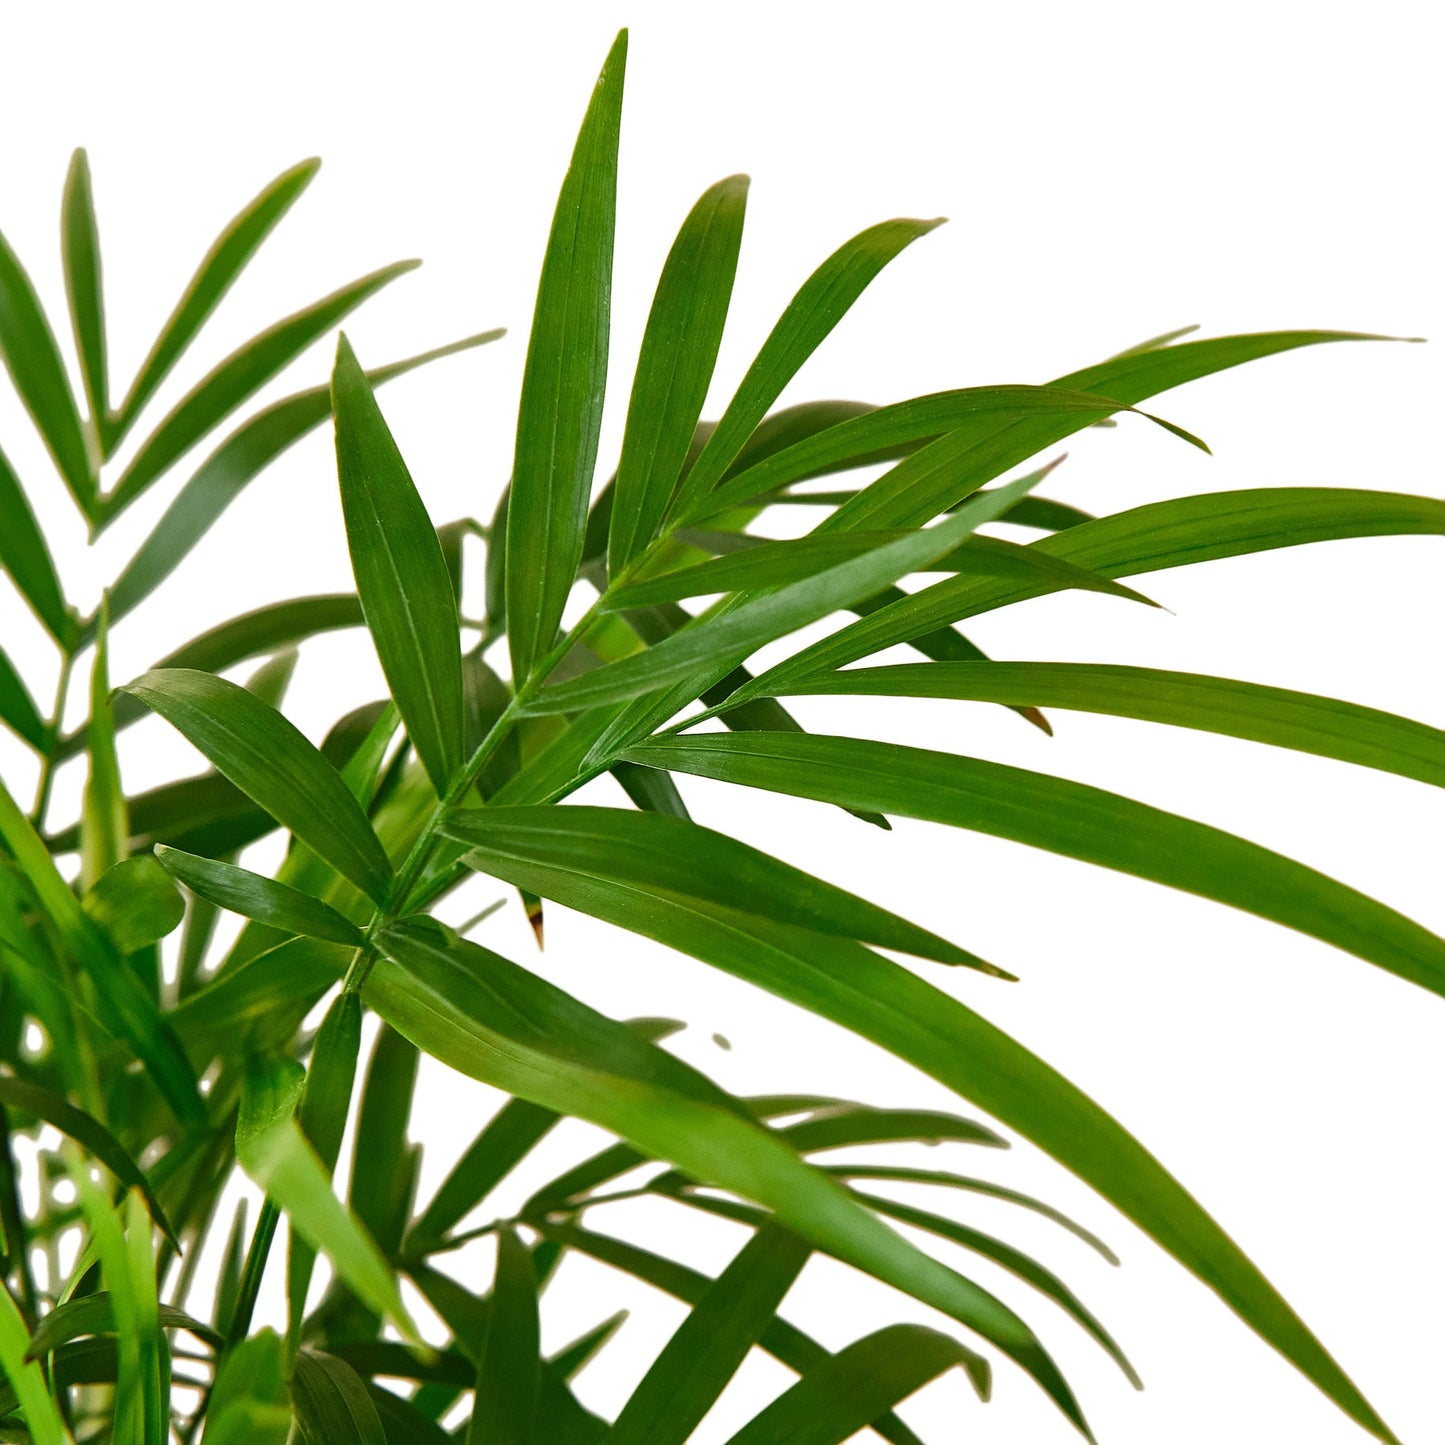 parlor palm live plant for sale